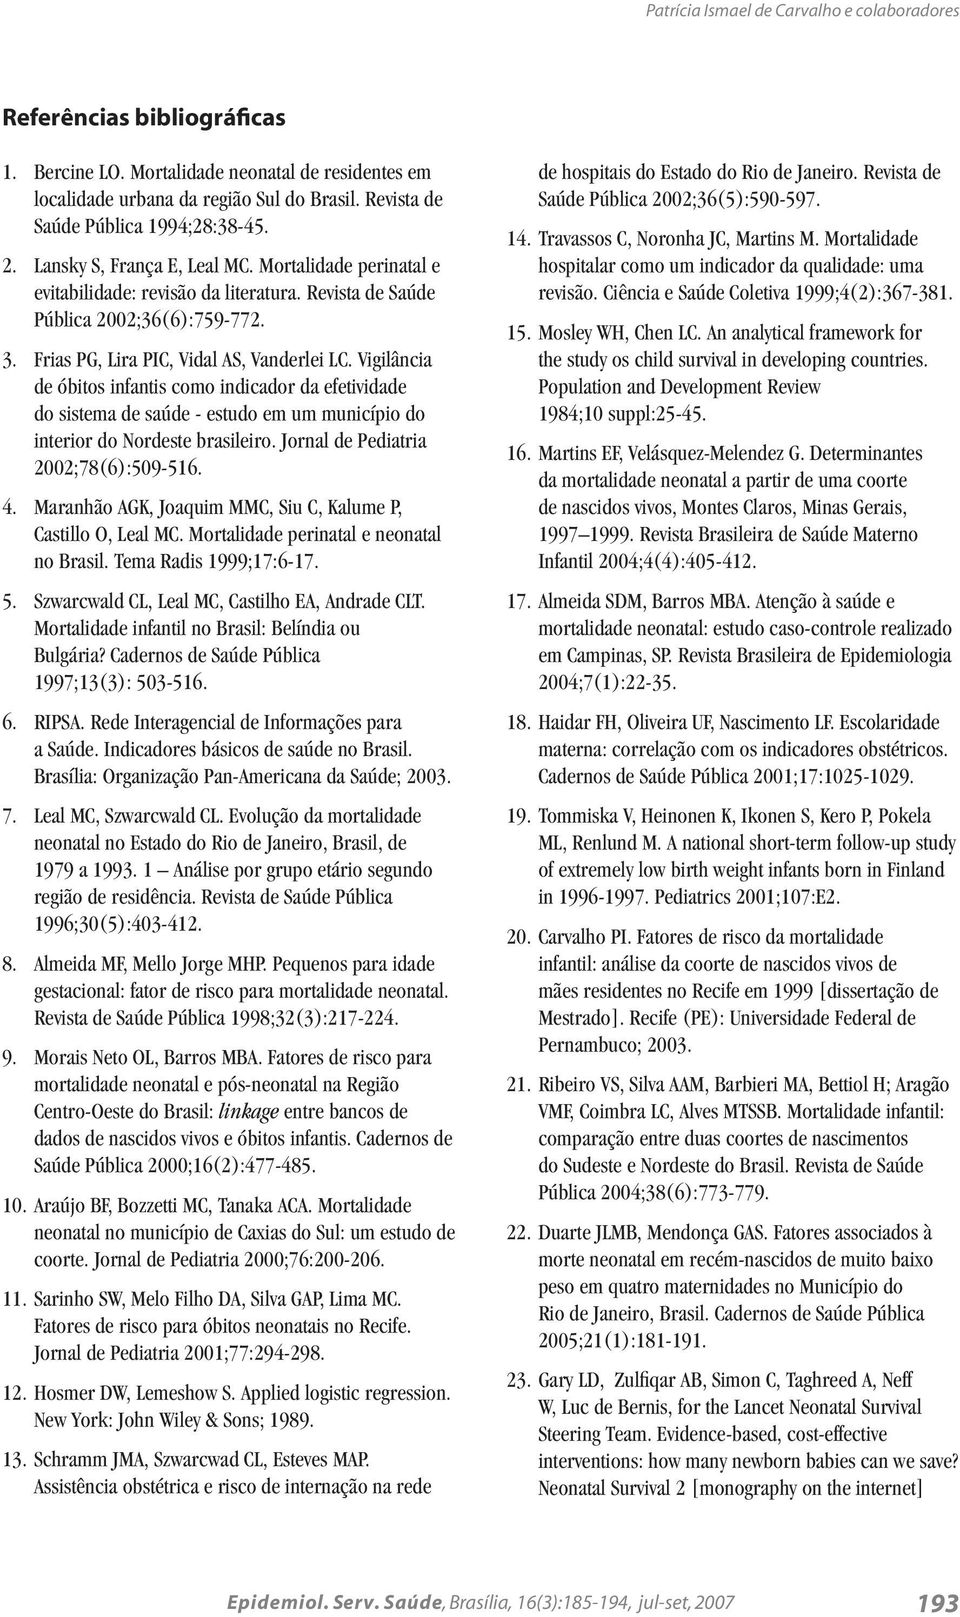 Frias PG, Lira PIC, Vidal AS, Vanderlei LC. Vigilância de óbitos infantis como indicador da efetividade do sistema de saúde - estudo em um município do interior do Nordeste brasileiro.